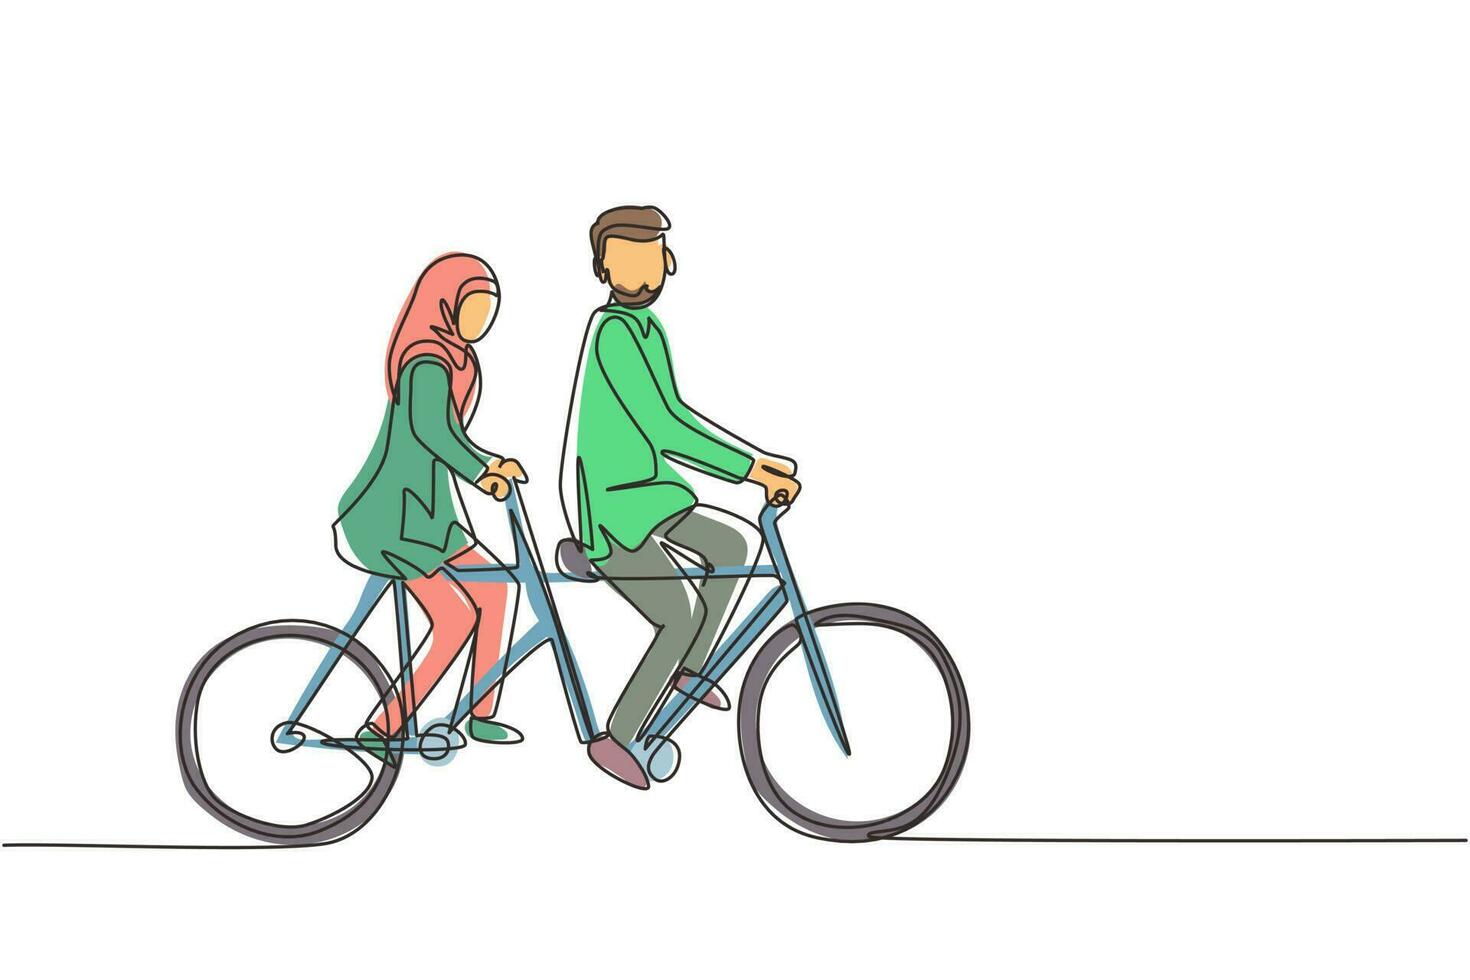 kontinuerlig en rad ritning romantiska arabiska par. paret rider tandem cykel tillsammans. glad familj. intimitet firar bröllopsdag. enda rad rita design vektorgrafisk illustration vektor